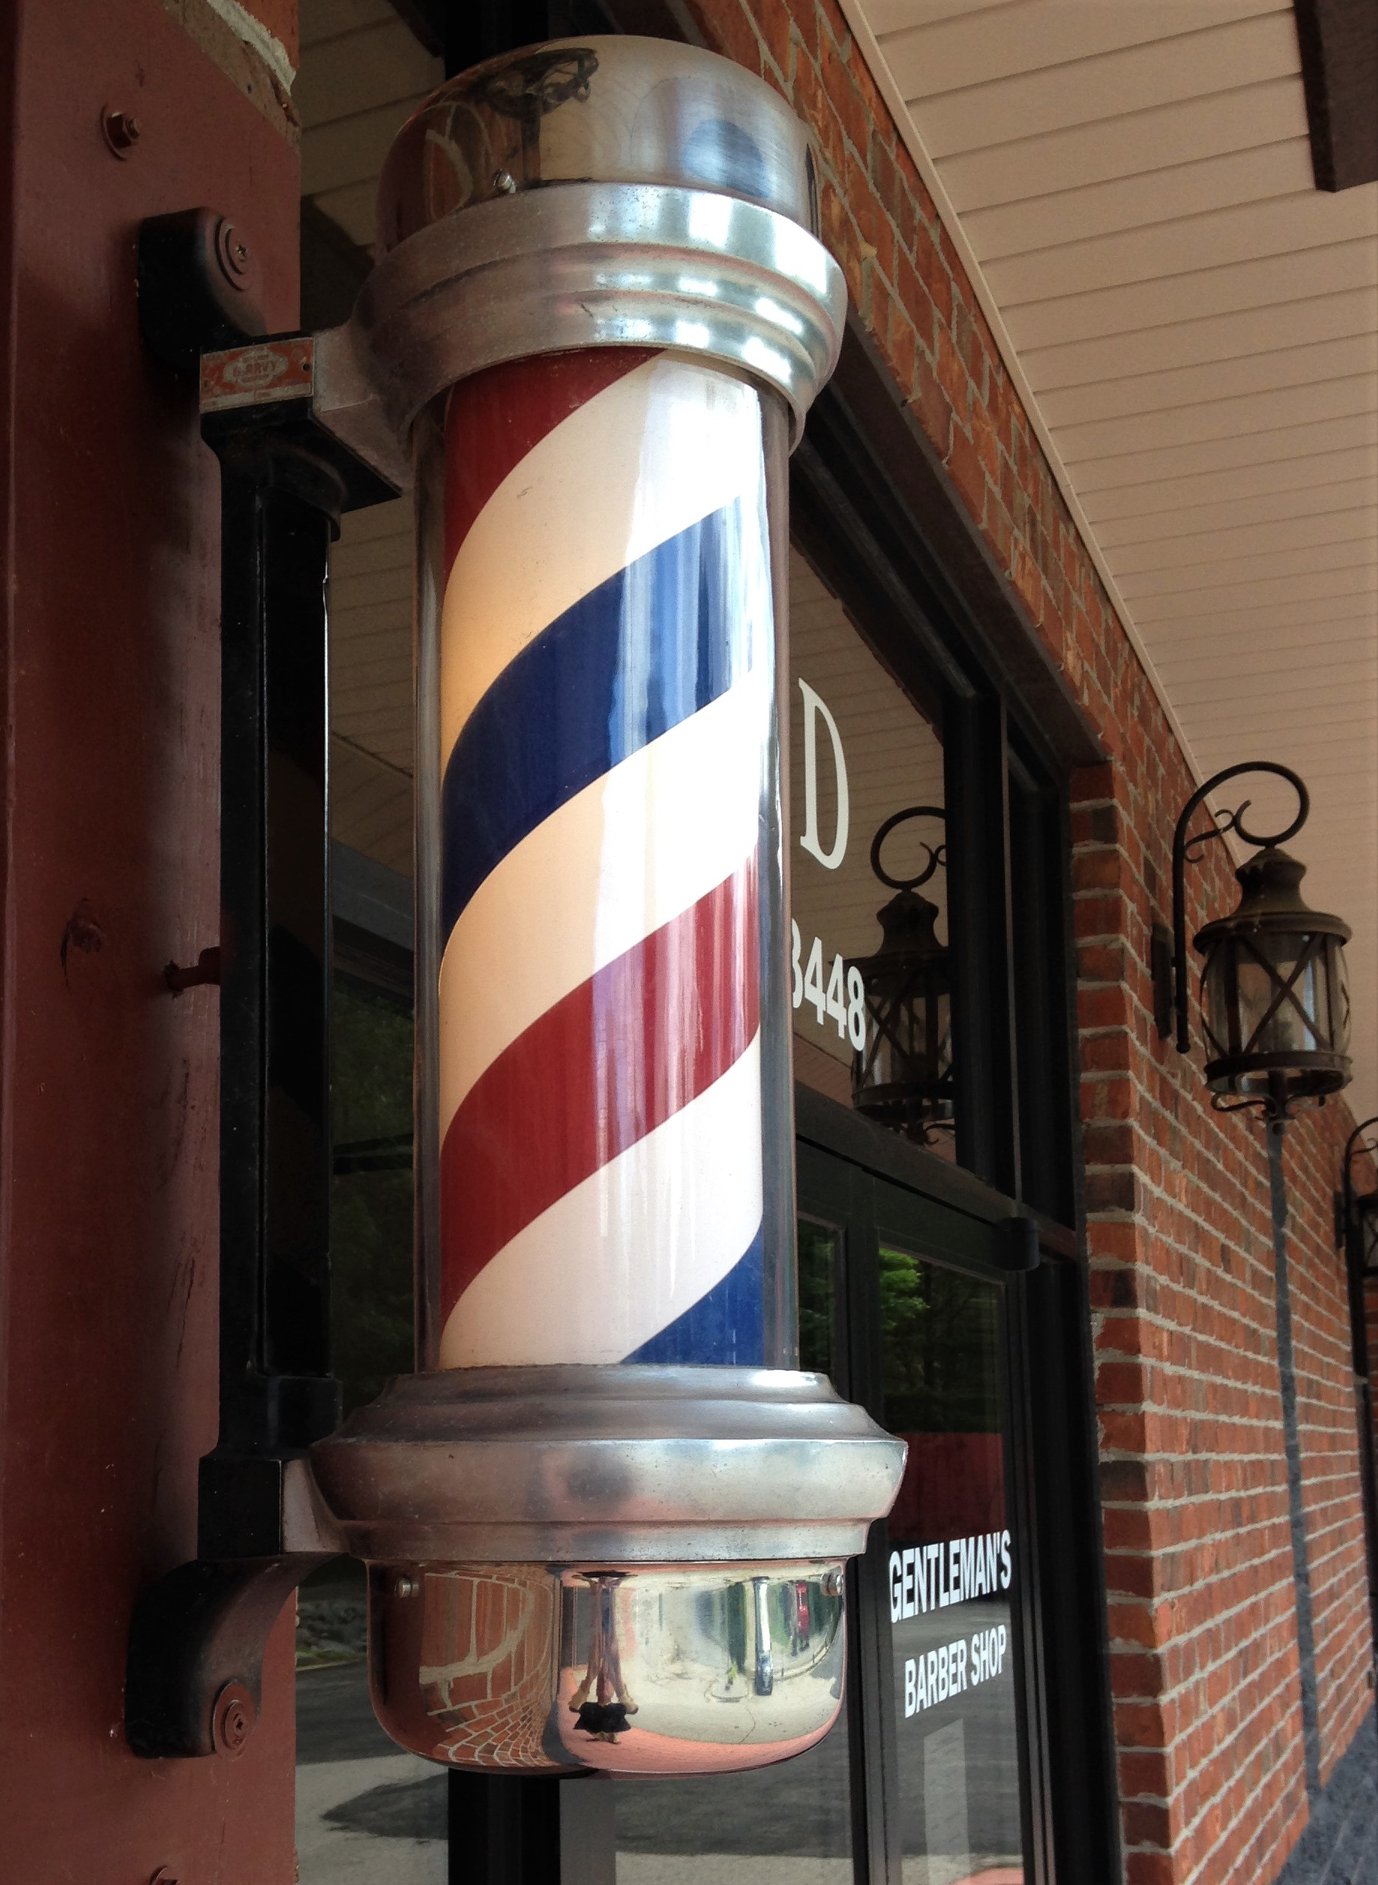 Gentlemen's Barbershop